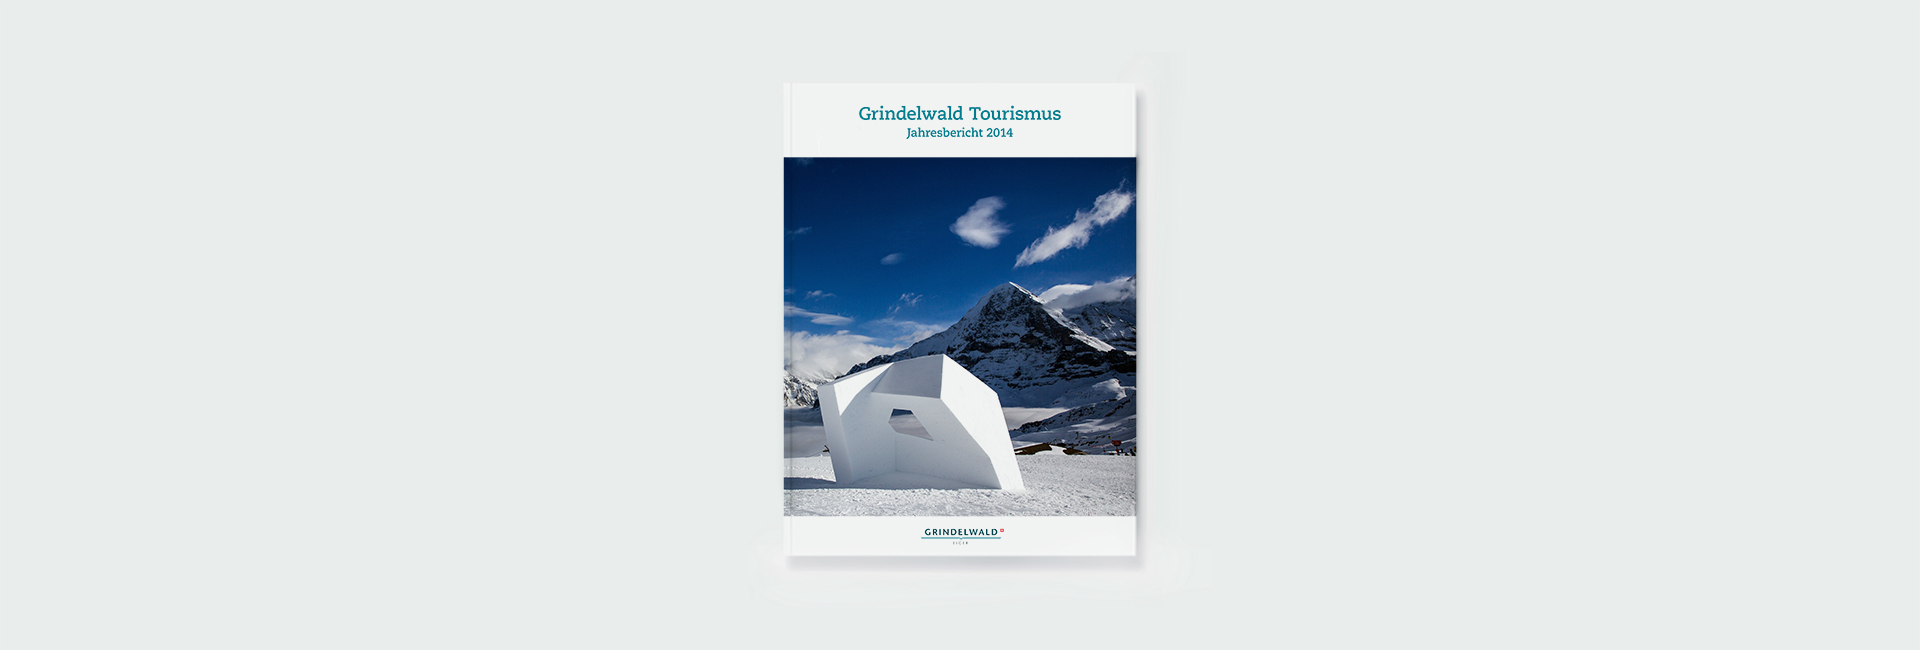 Jahresbericht Grindelwald Tourismus